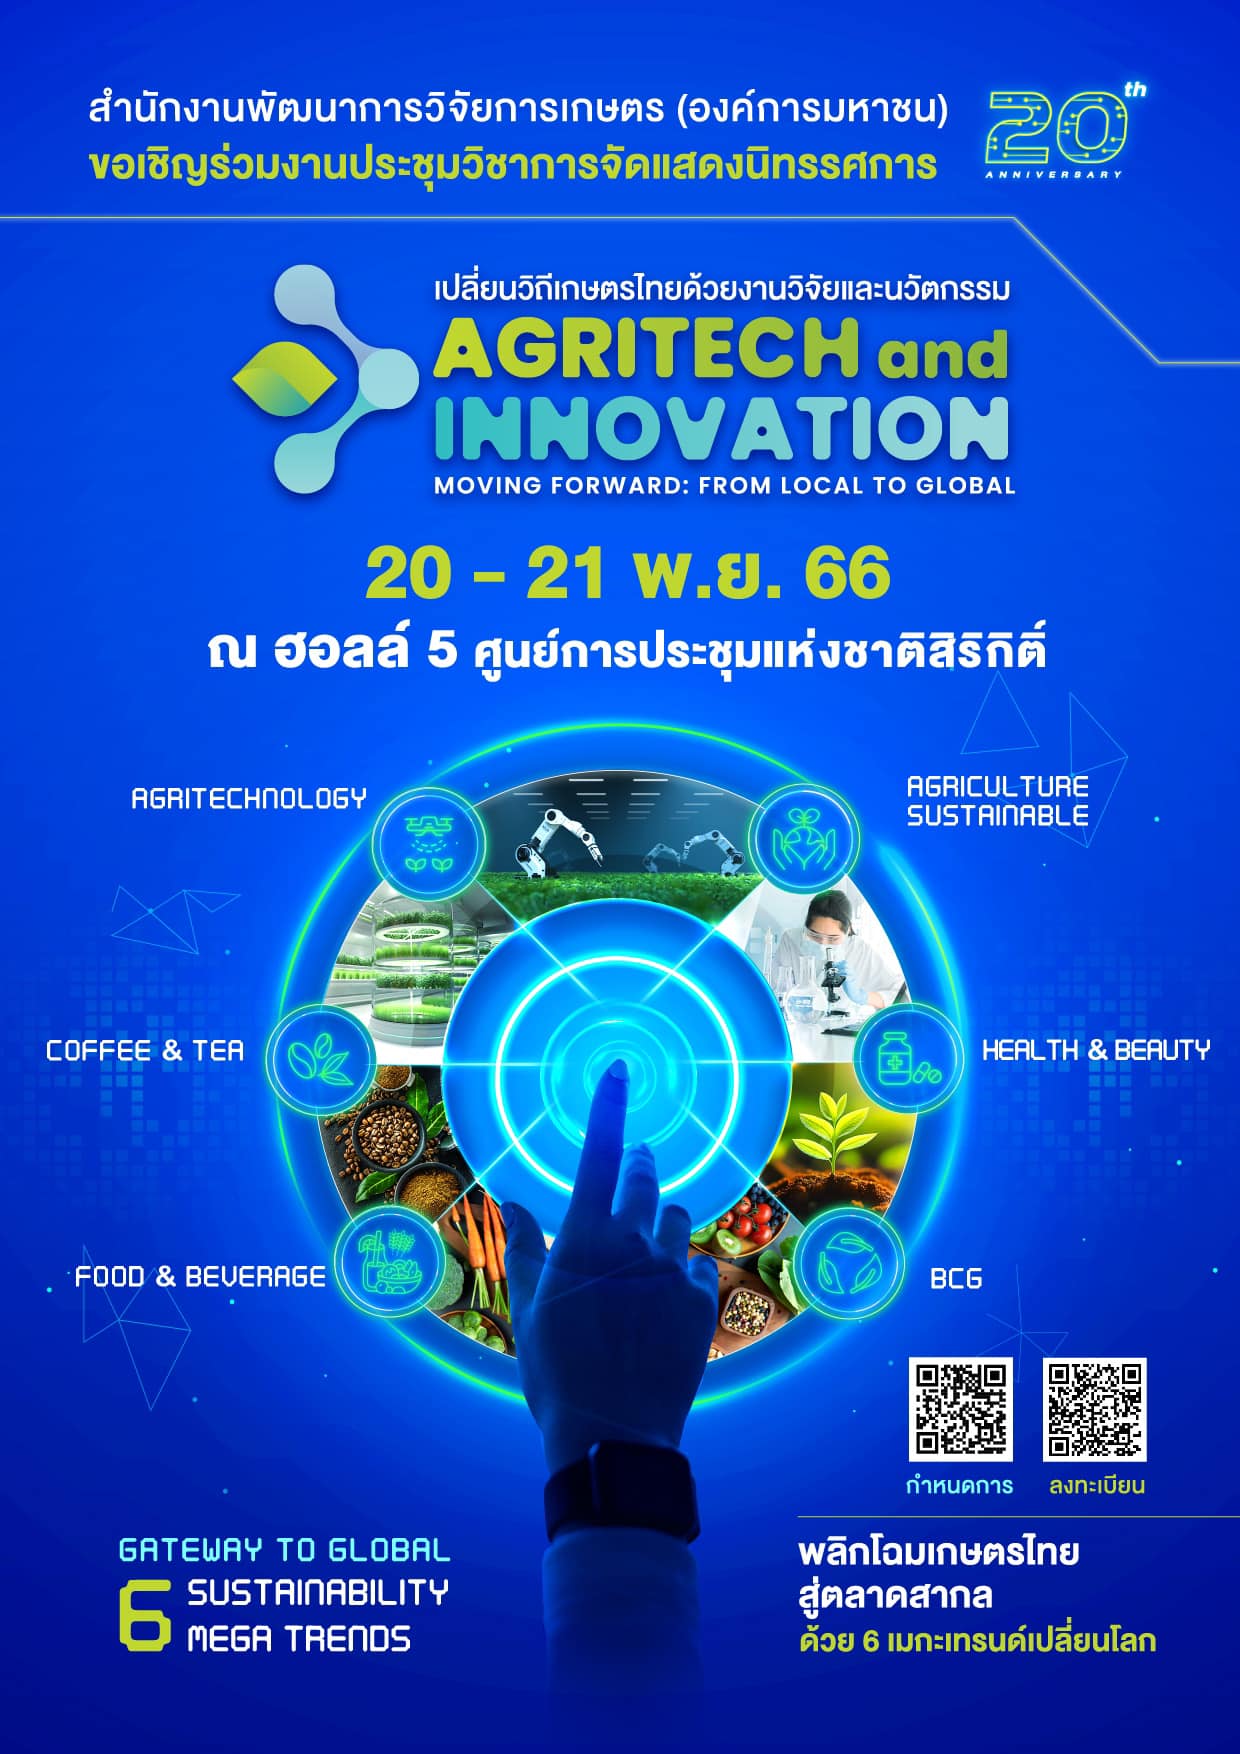 ขอเชิญร่วมงานประชุมวิชาการและจัดแสดงผลงานวิจัยและนวัตกรรมด้านการเกษตร ในงาน เปลี่ยนวิถีเกษตรไทย ด้วยงานวิจัยและนวัตกรรม